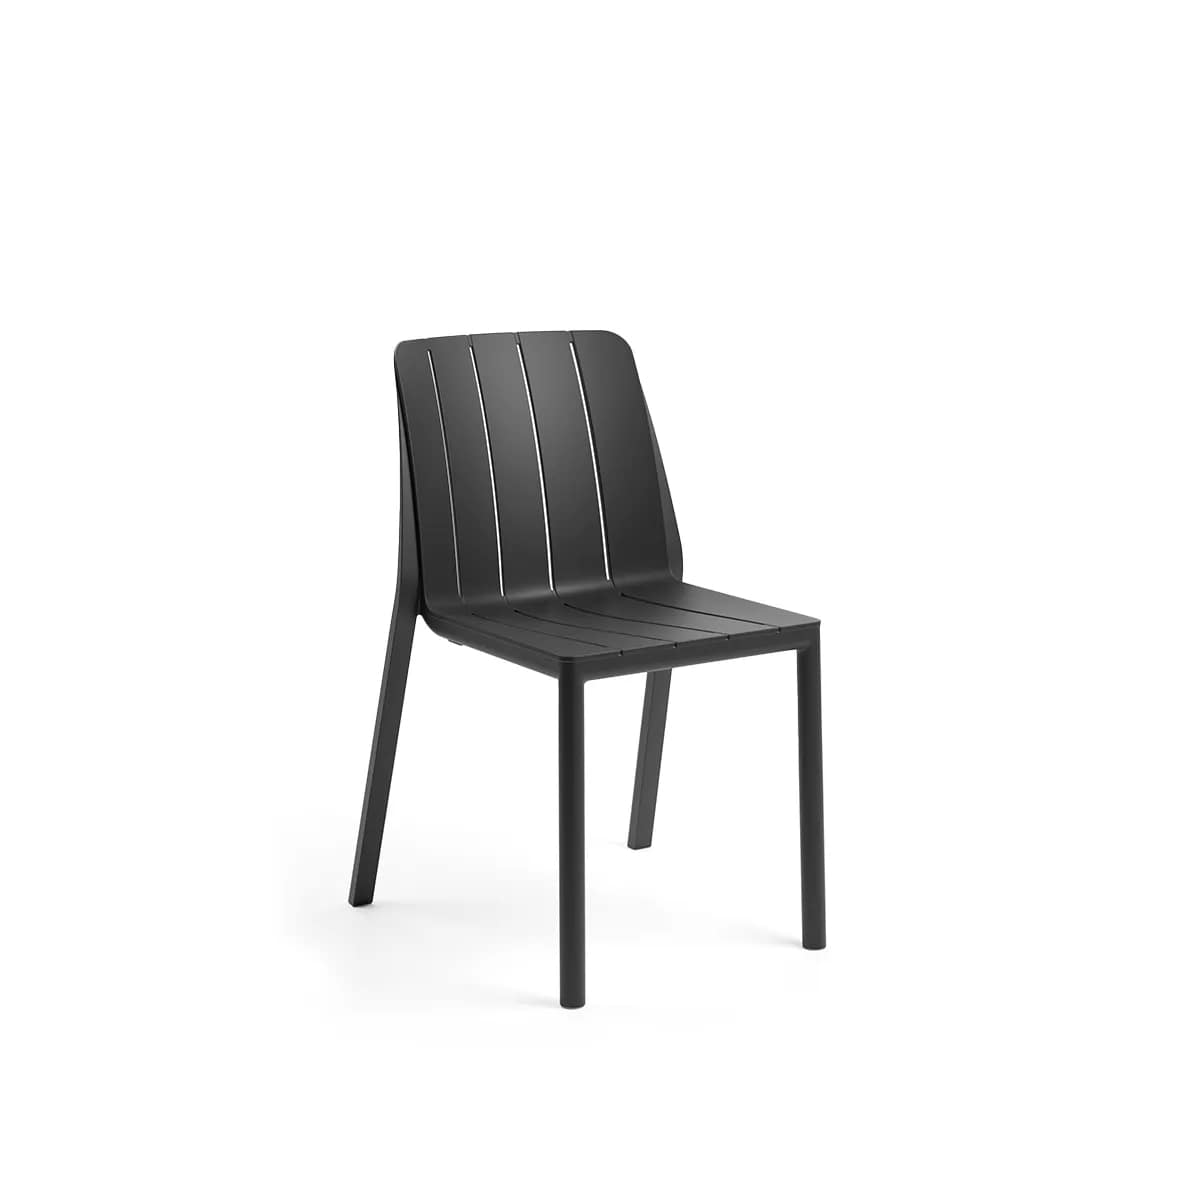 immagine-1-nardi-sedia-tiberina-bistrot-antracite